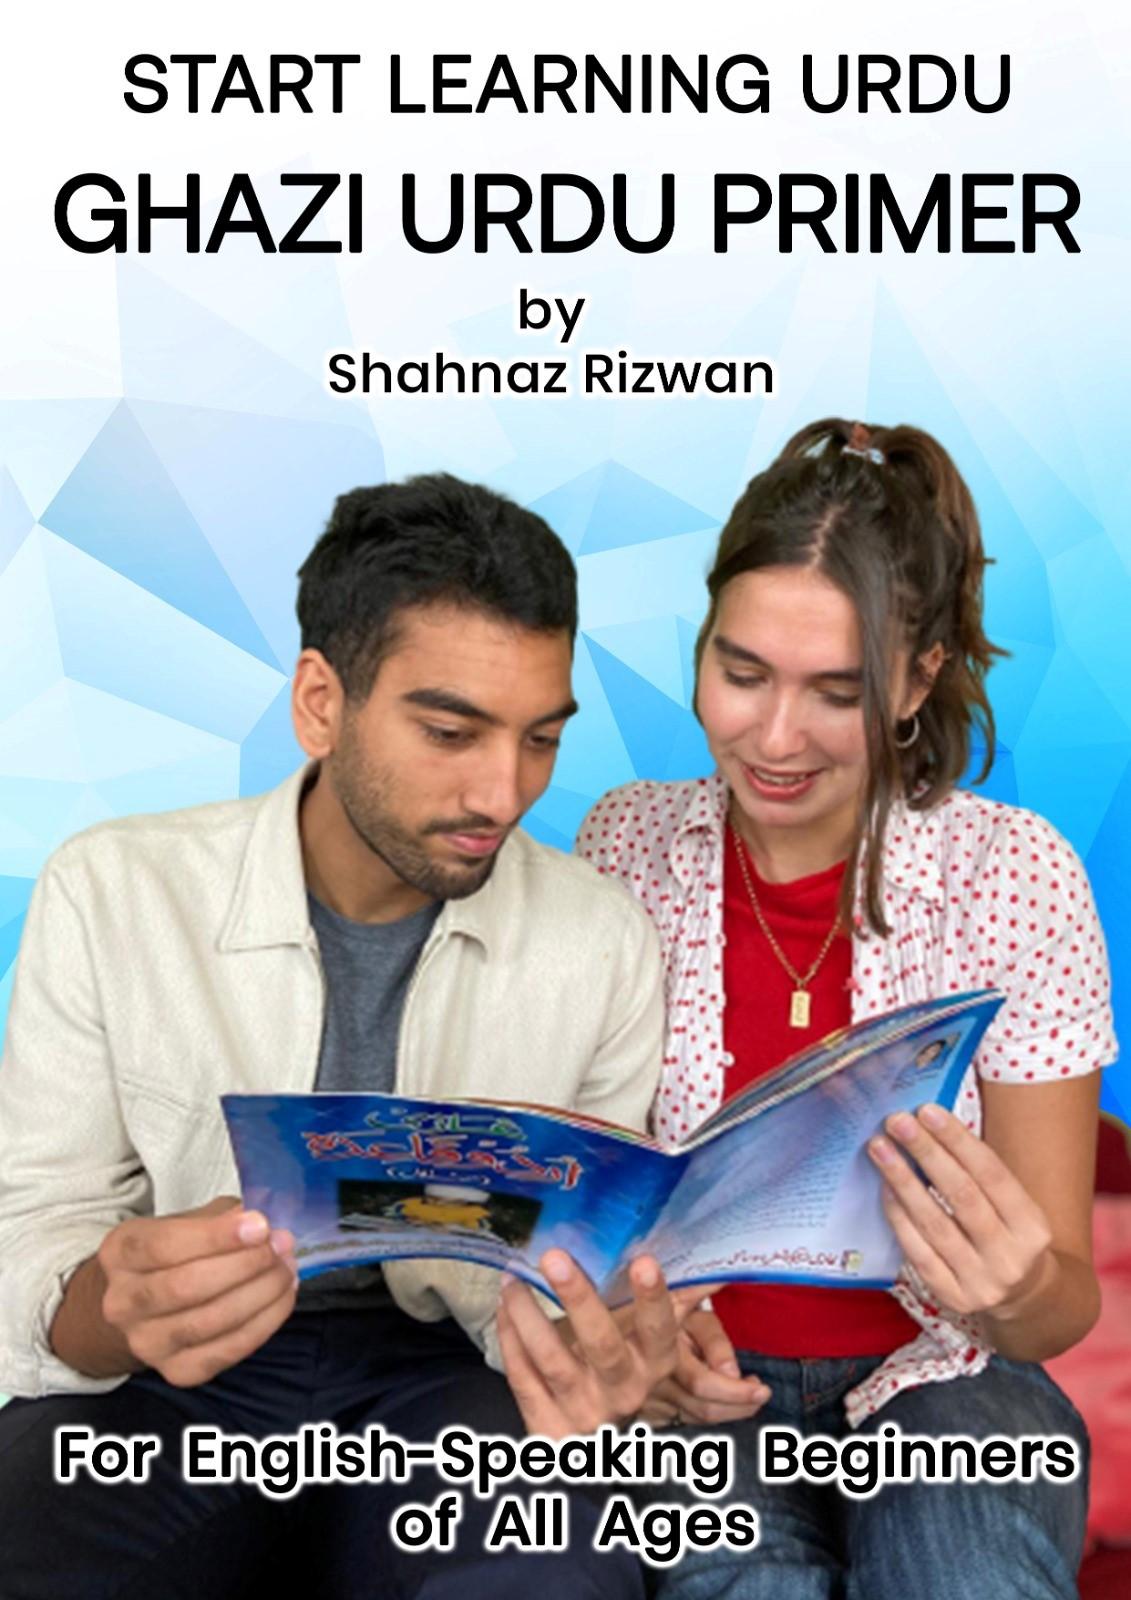 Start Learning Urdu with Shahnaz Rizwan